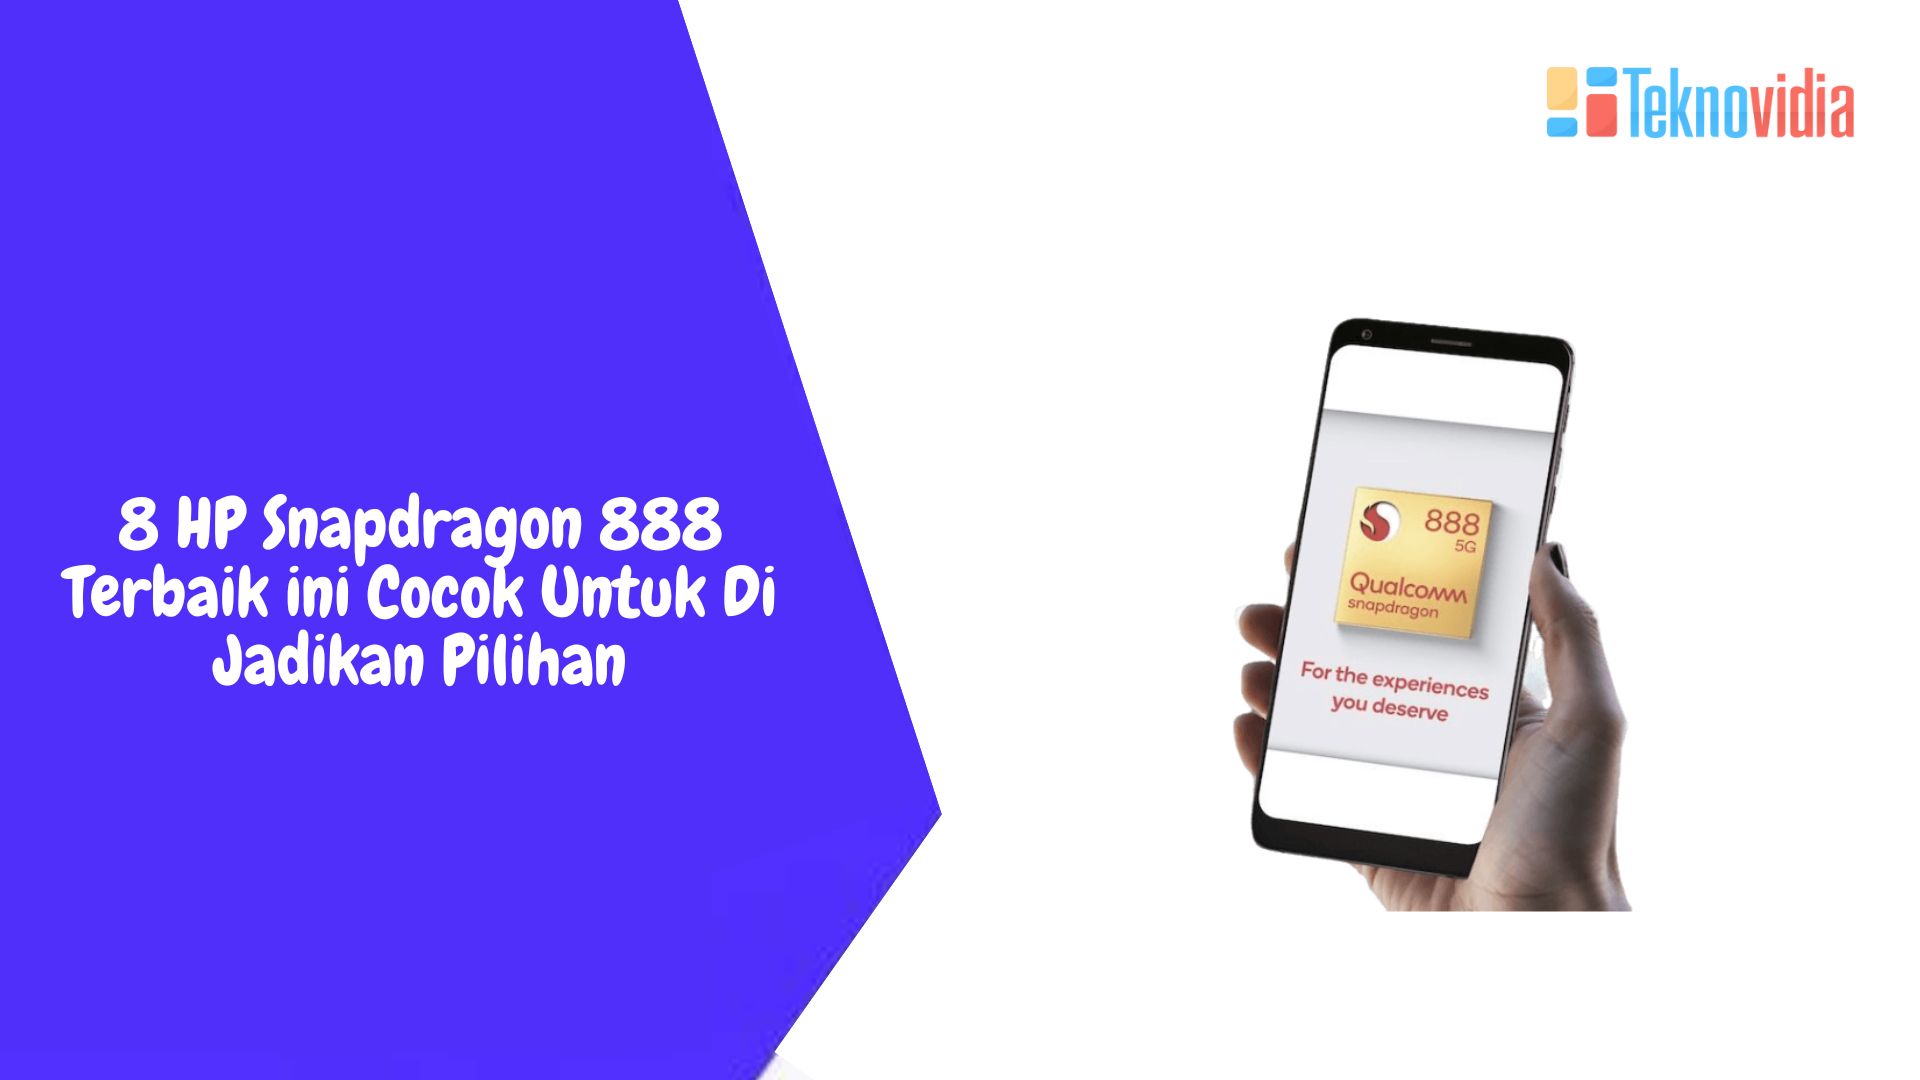 8 HP Snapdragon 888 Terbaik ini Cocok Untuk Di Jadikan Pilihan